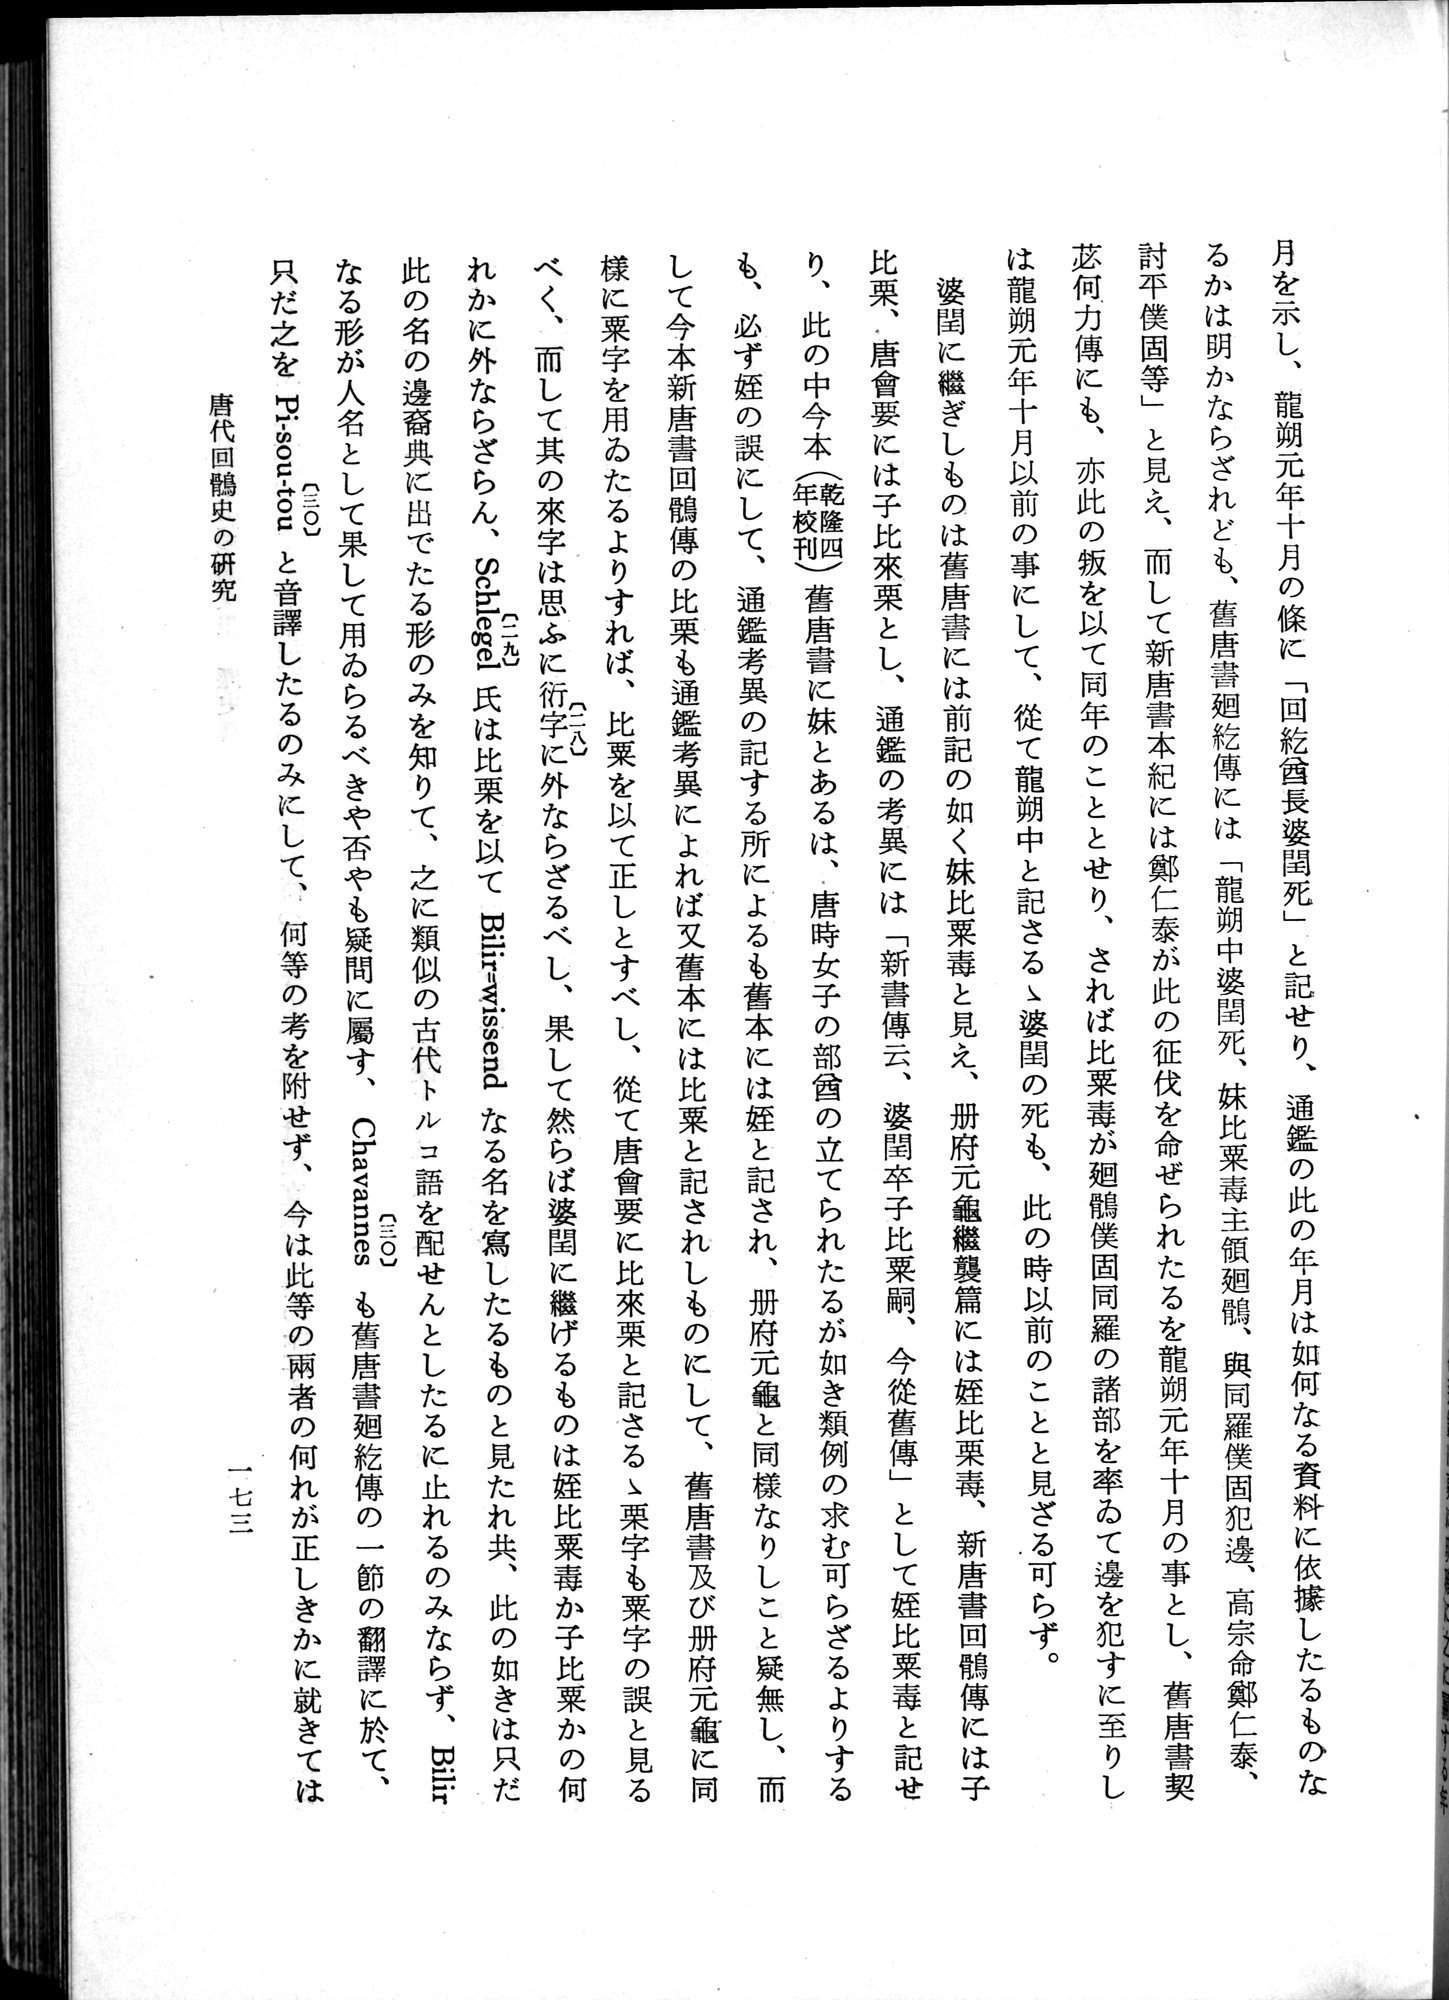 羽田博士史学論文集 : vol.1 / Page 211 (Grayscale High Resolution Image)